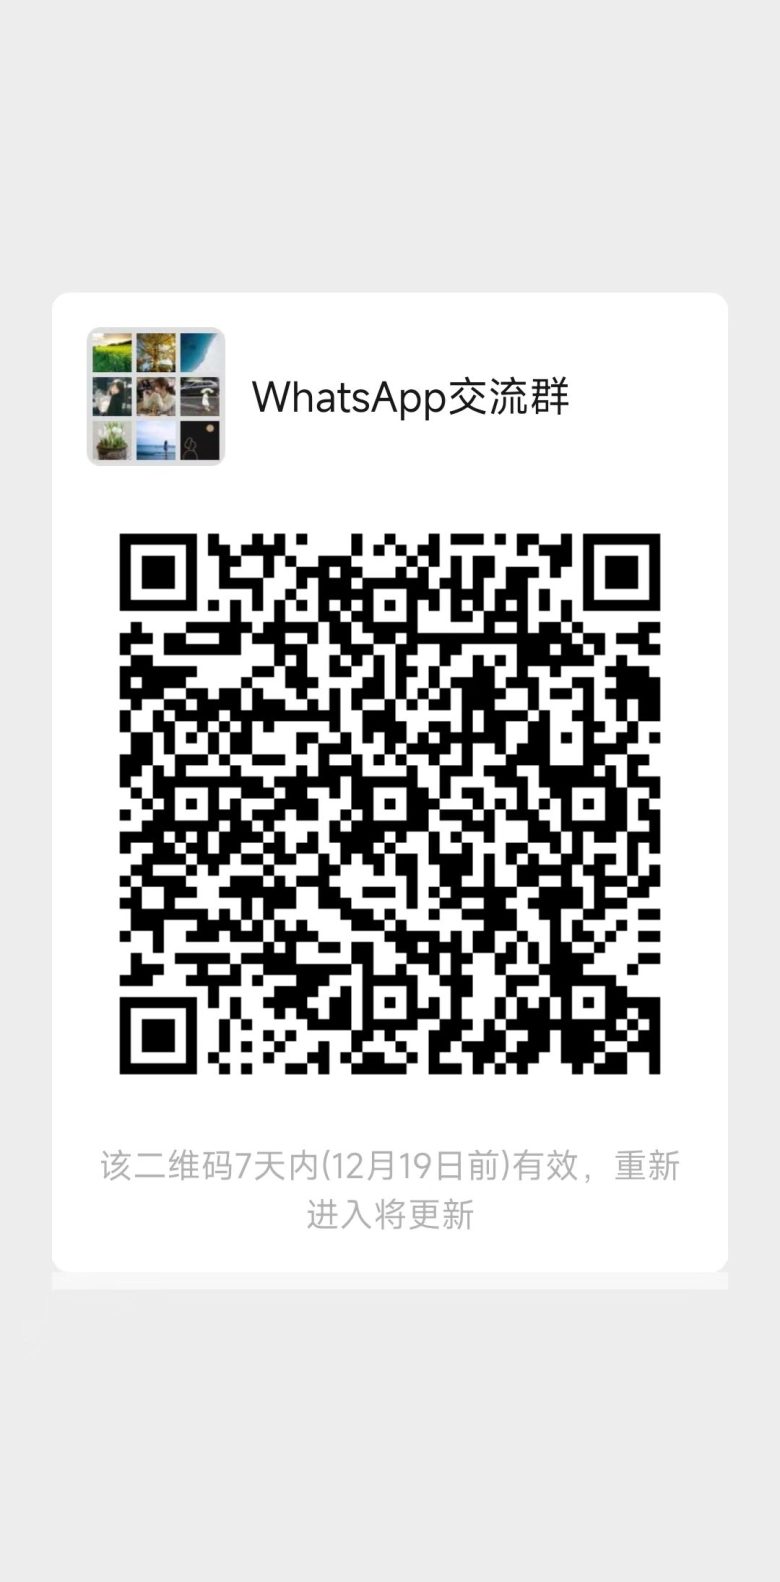 whatsapp交流群